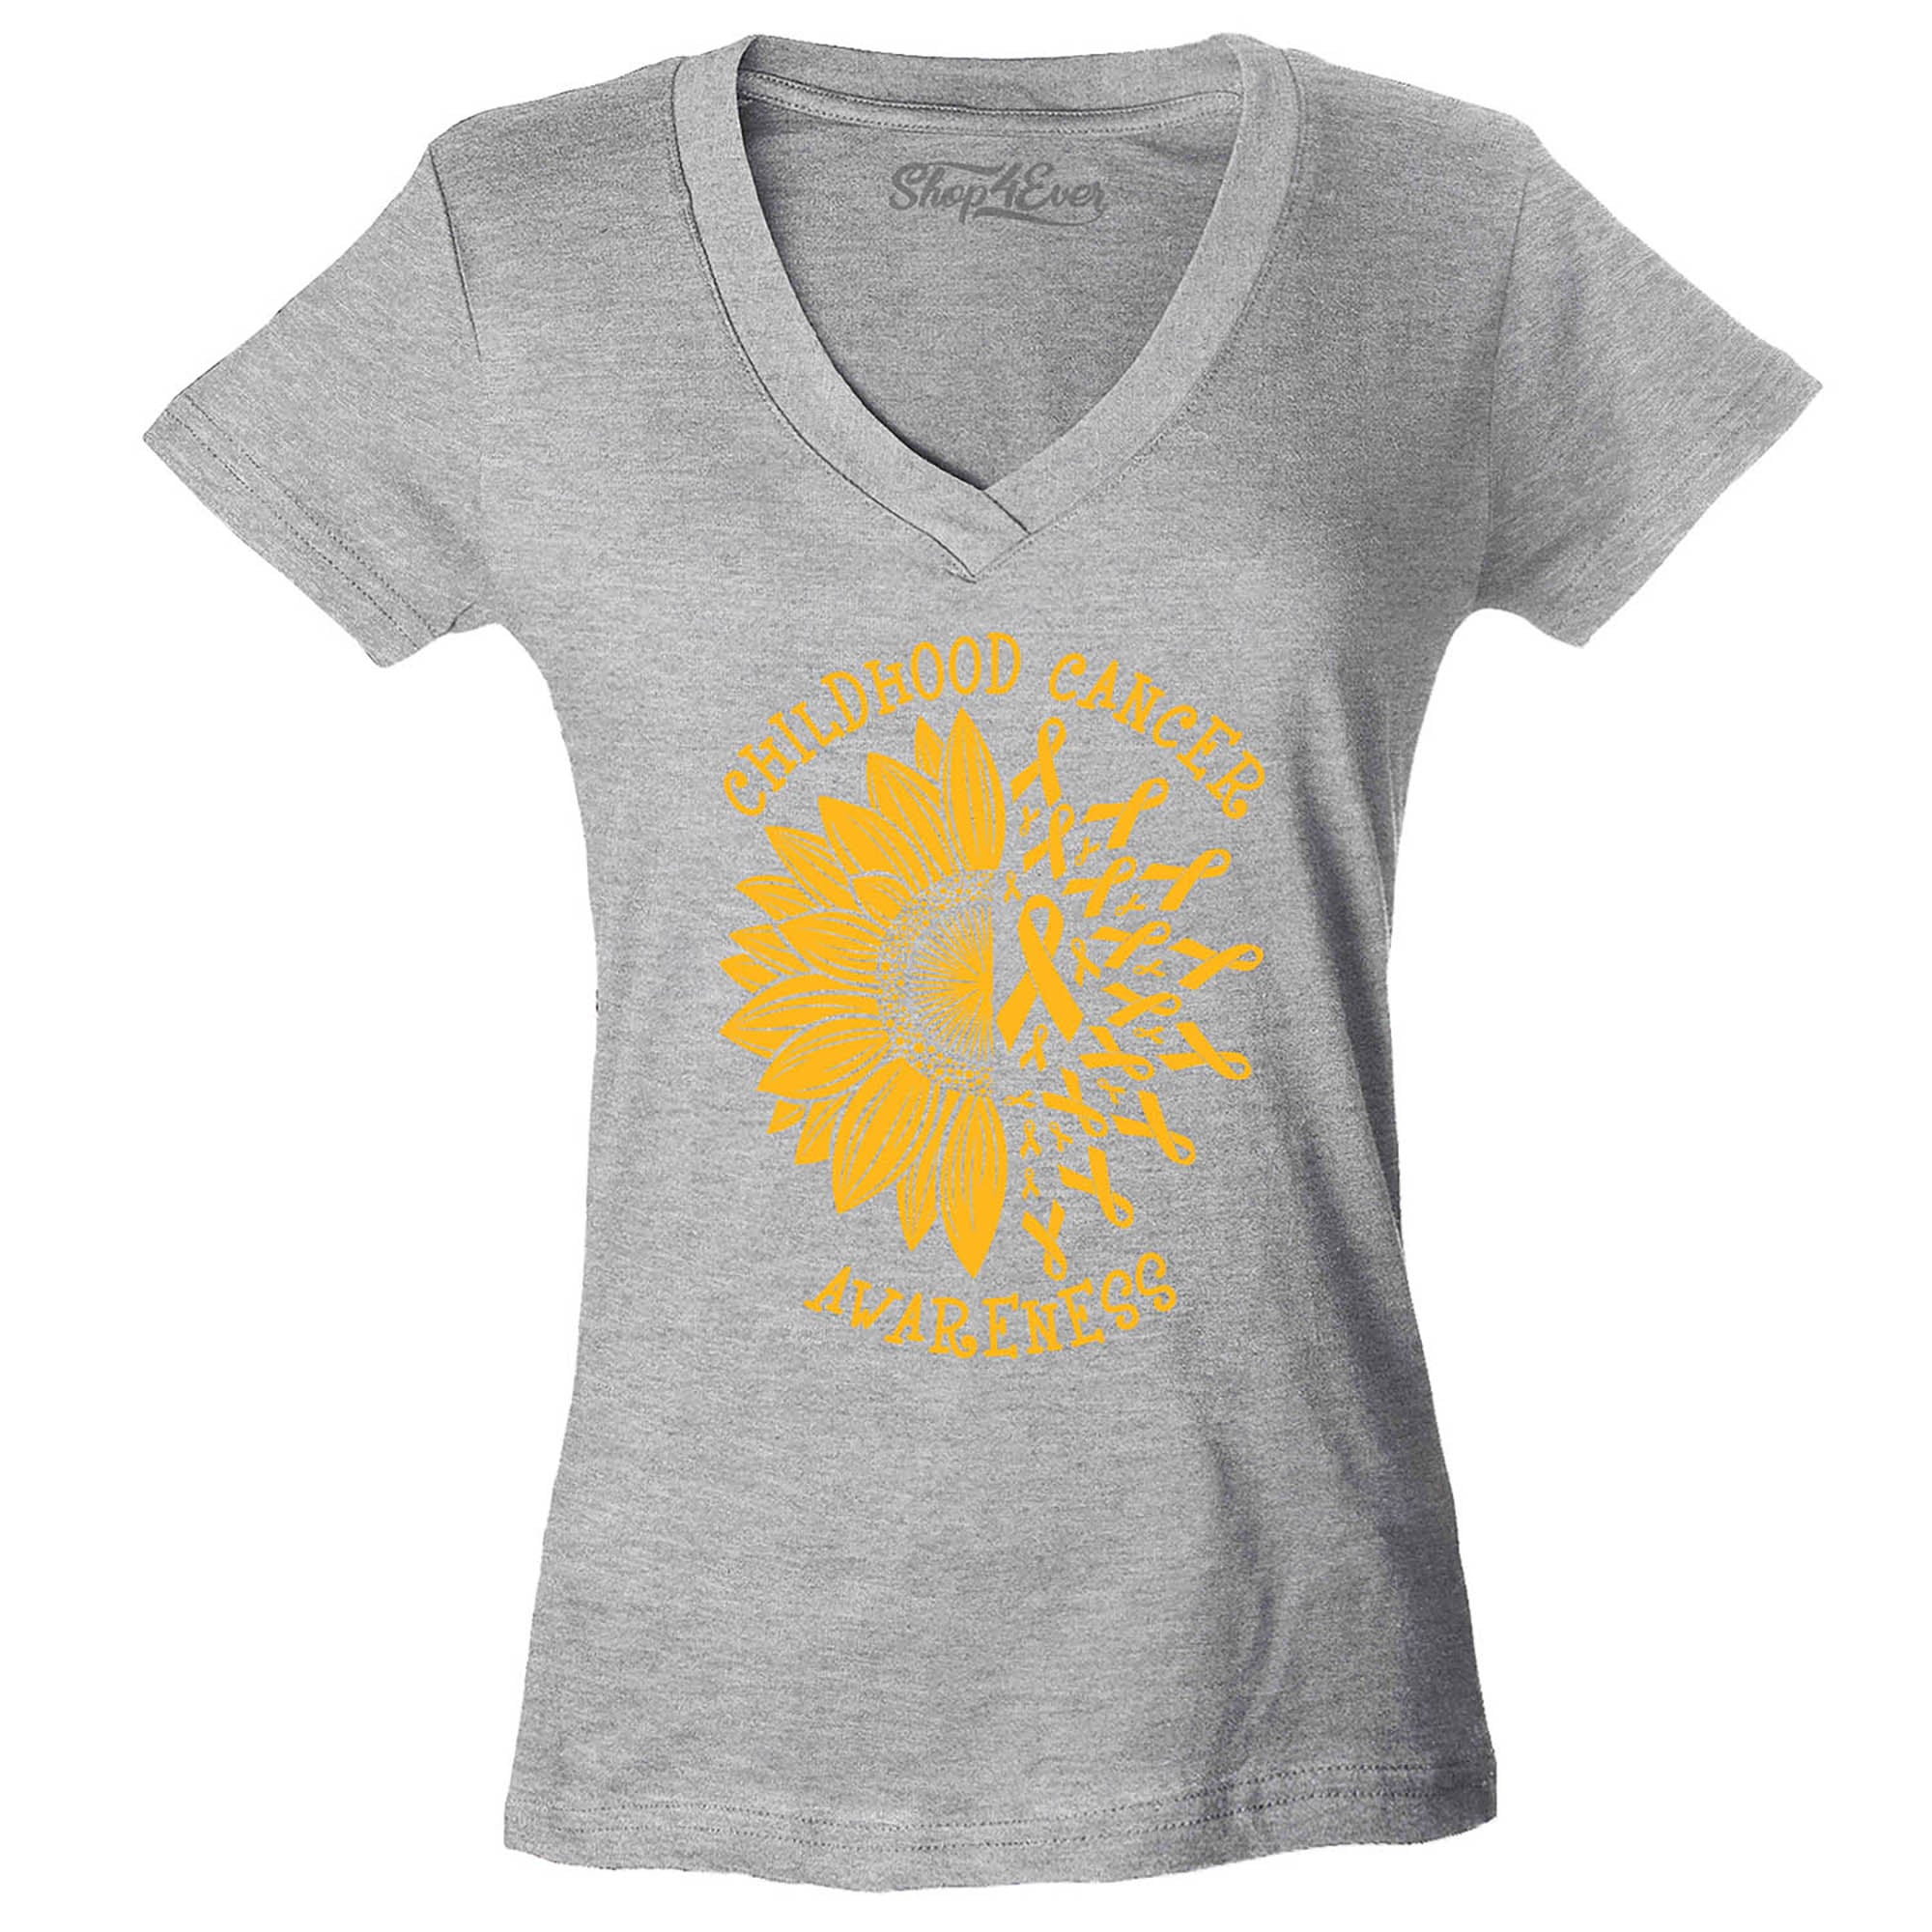 Sunflower Gold Ribbon Childhood Cancer Awareness Women's V-Neck T-Shirt Slim Fit